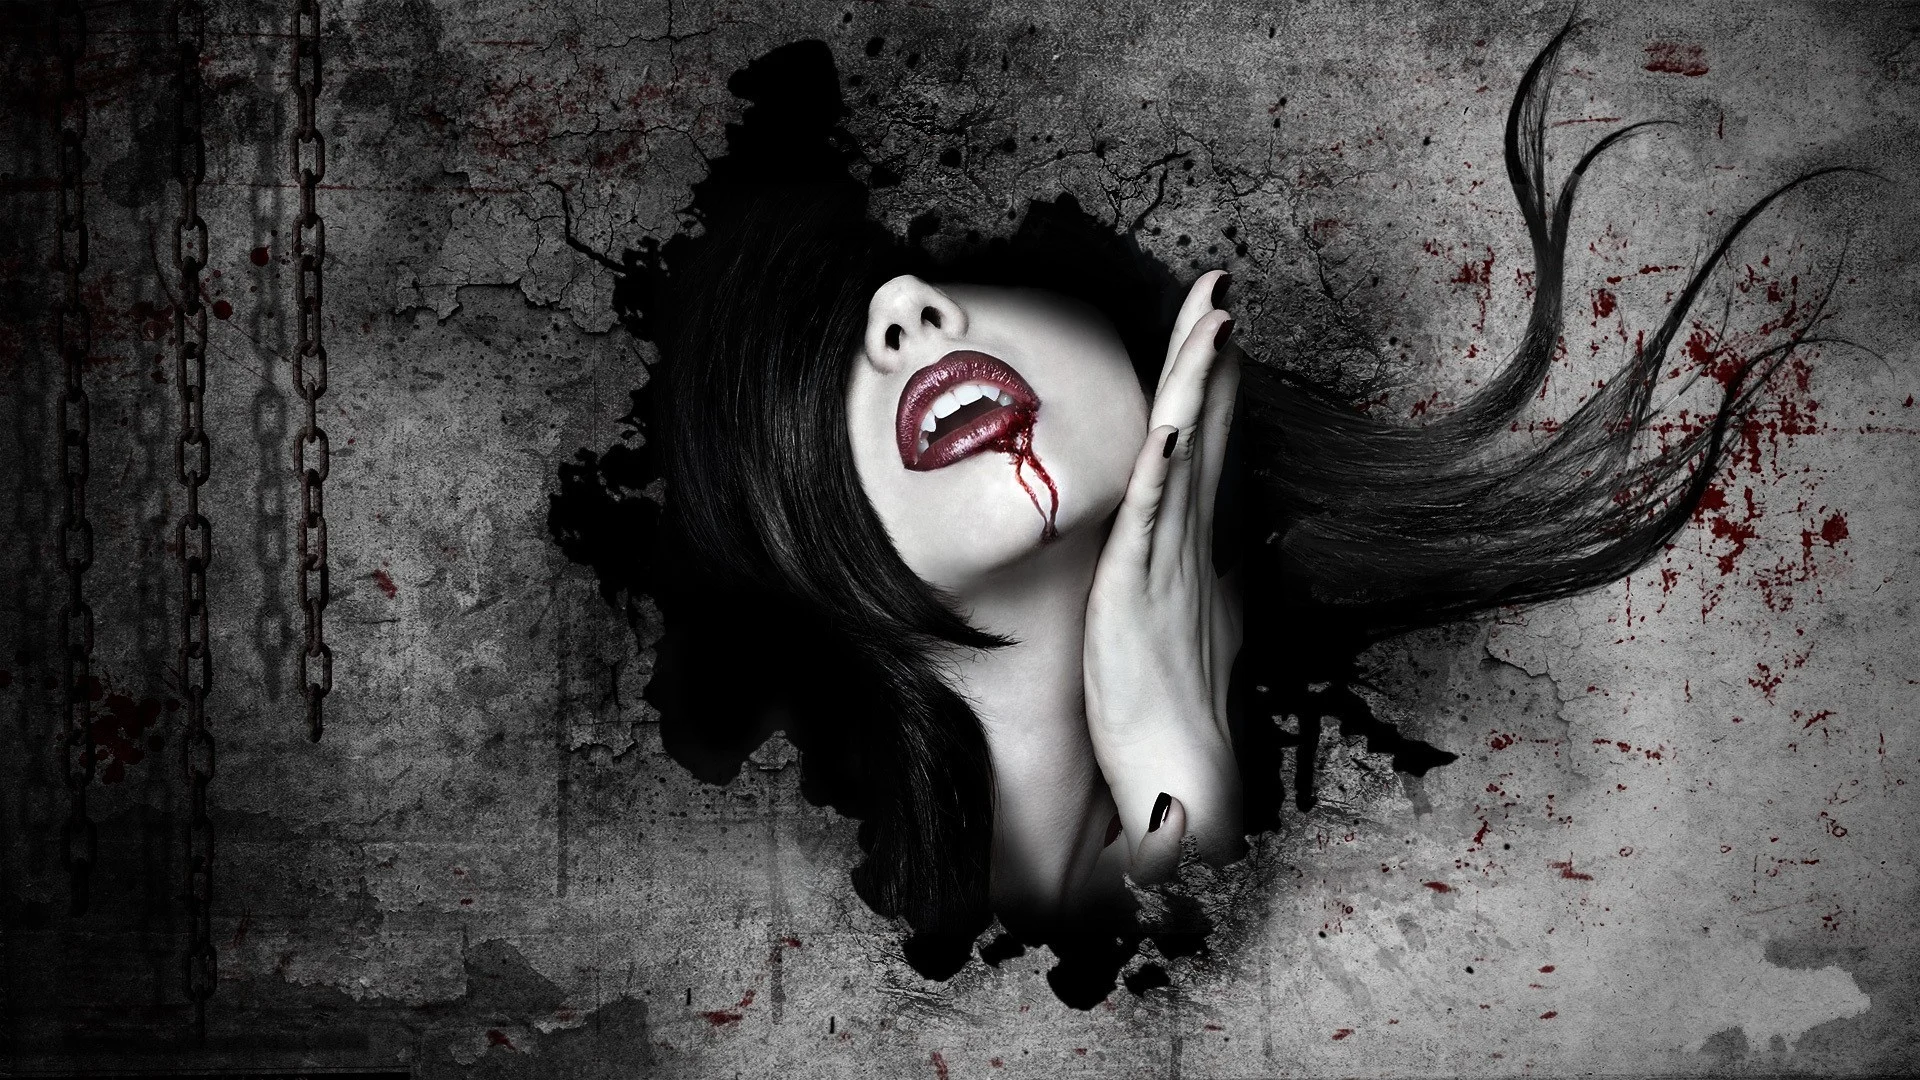 women vampires blood face wallpaper | | 31072 | WallpaperUP .